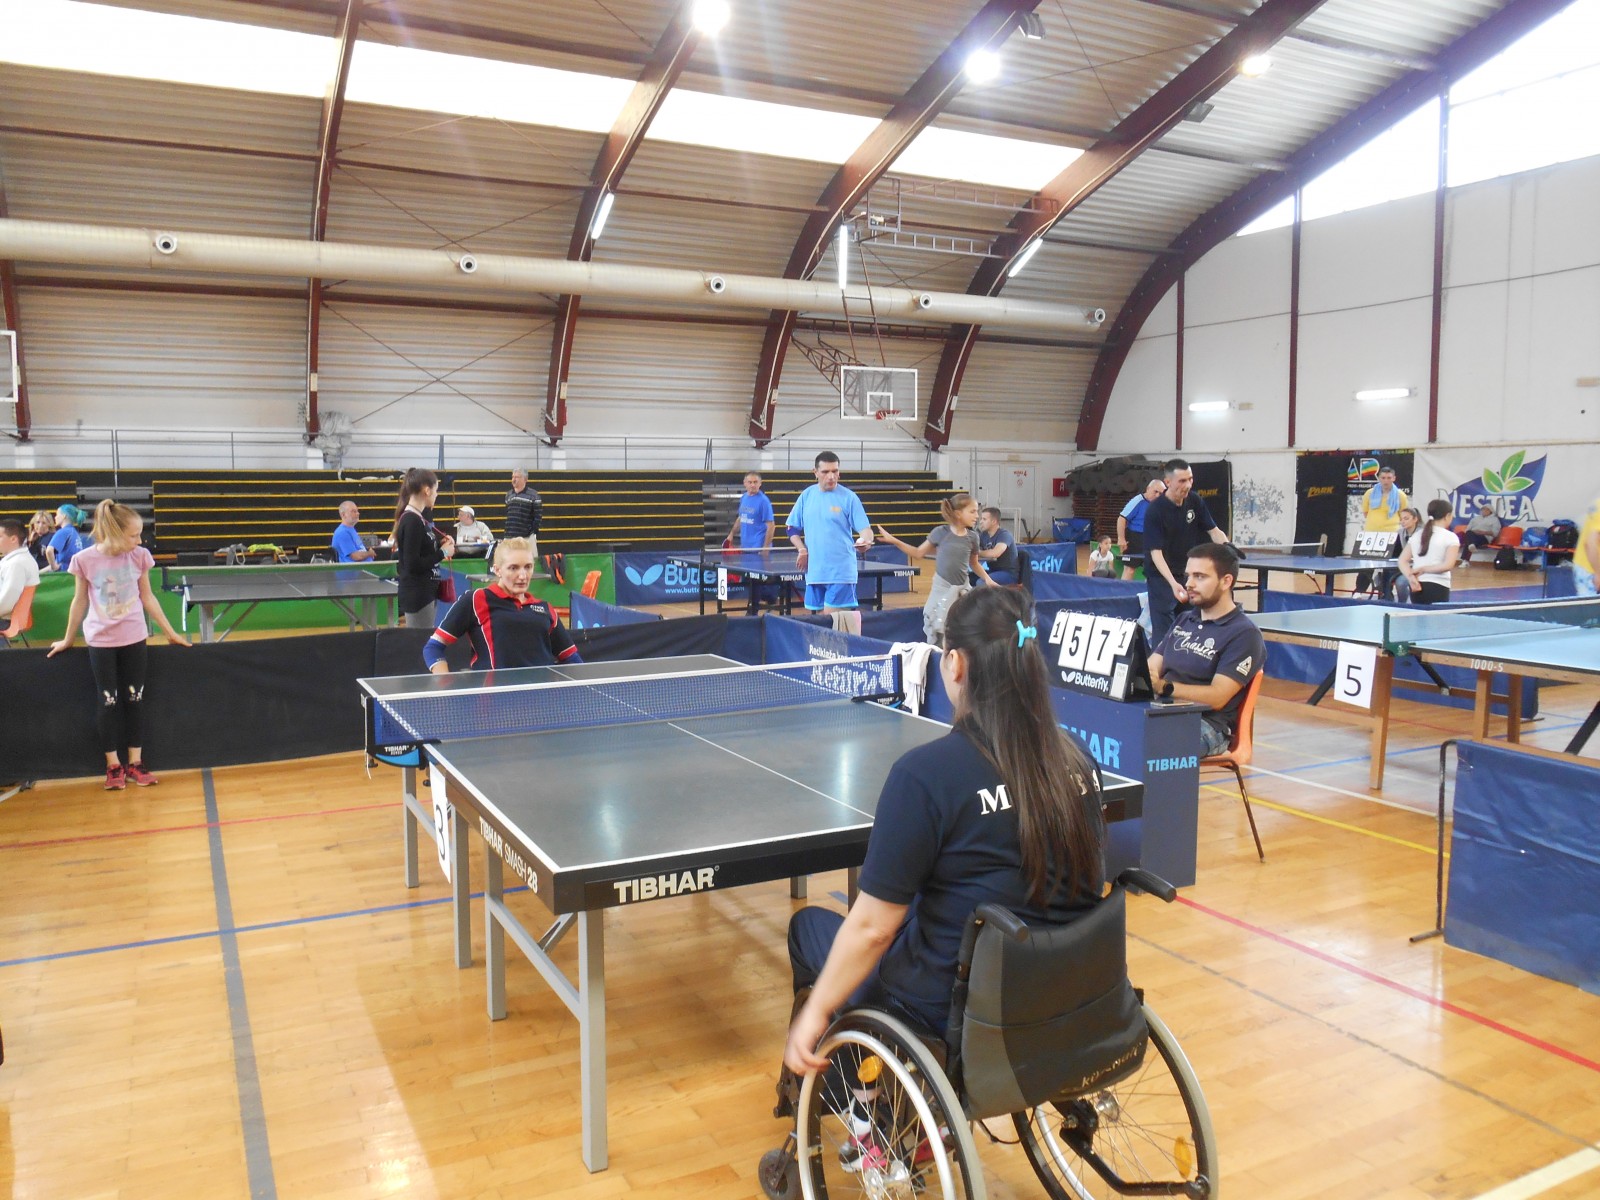 Stonoteniski turnir za osobe sa invaliditetom u Kragujevcu